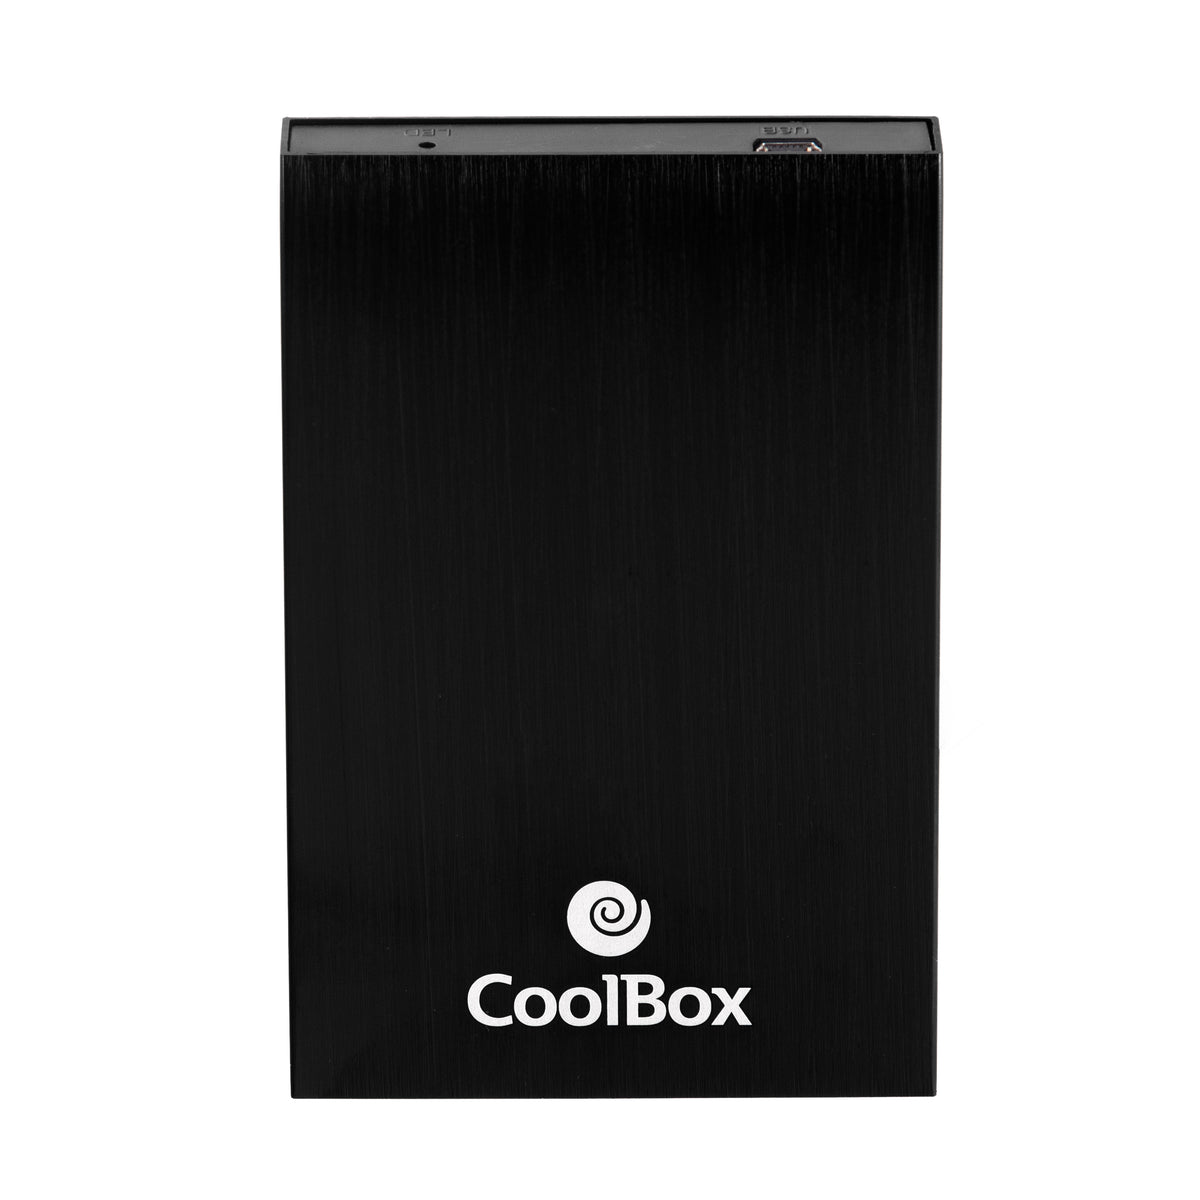 Caixa p/ disco externo 2.5 CoolBox 2512 USB 2.0 Aluminio